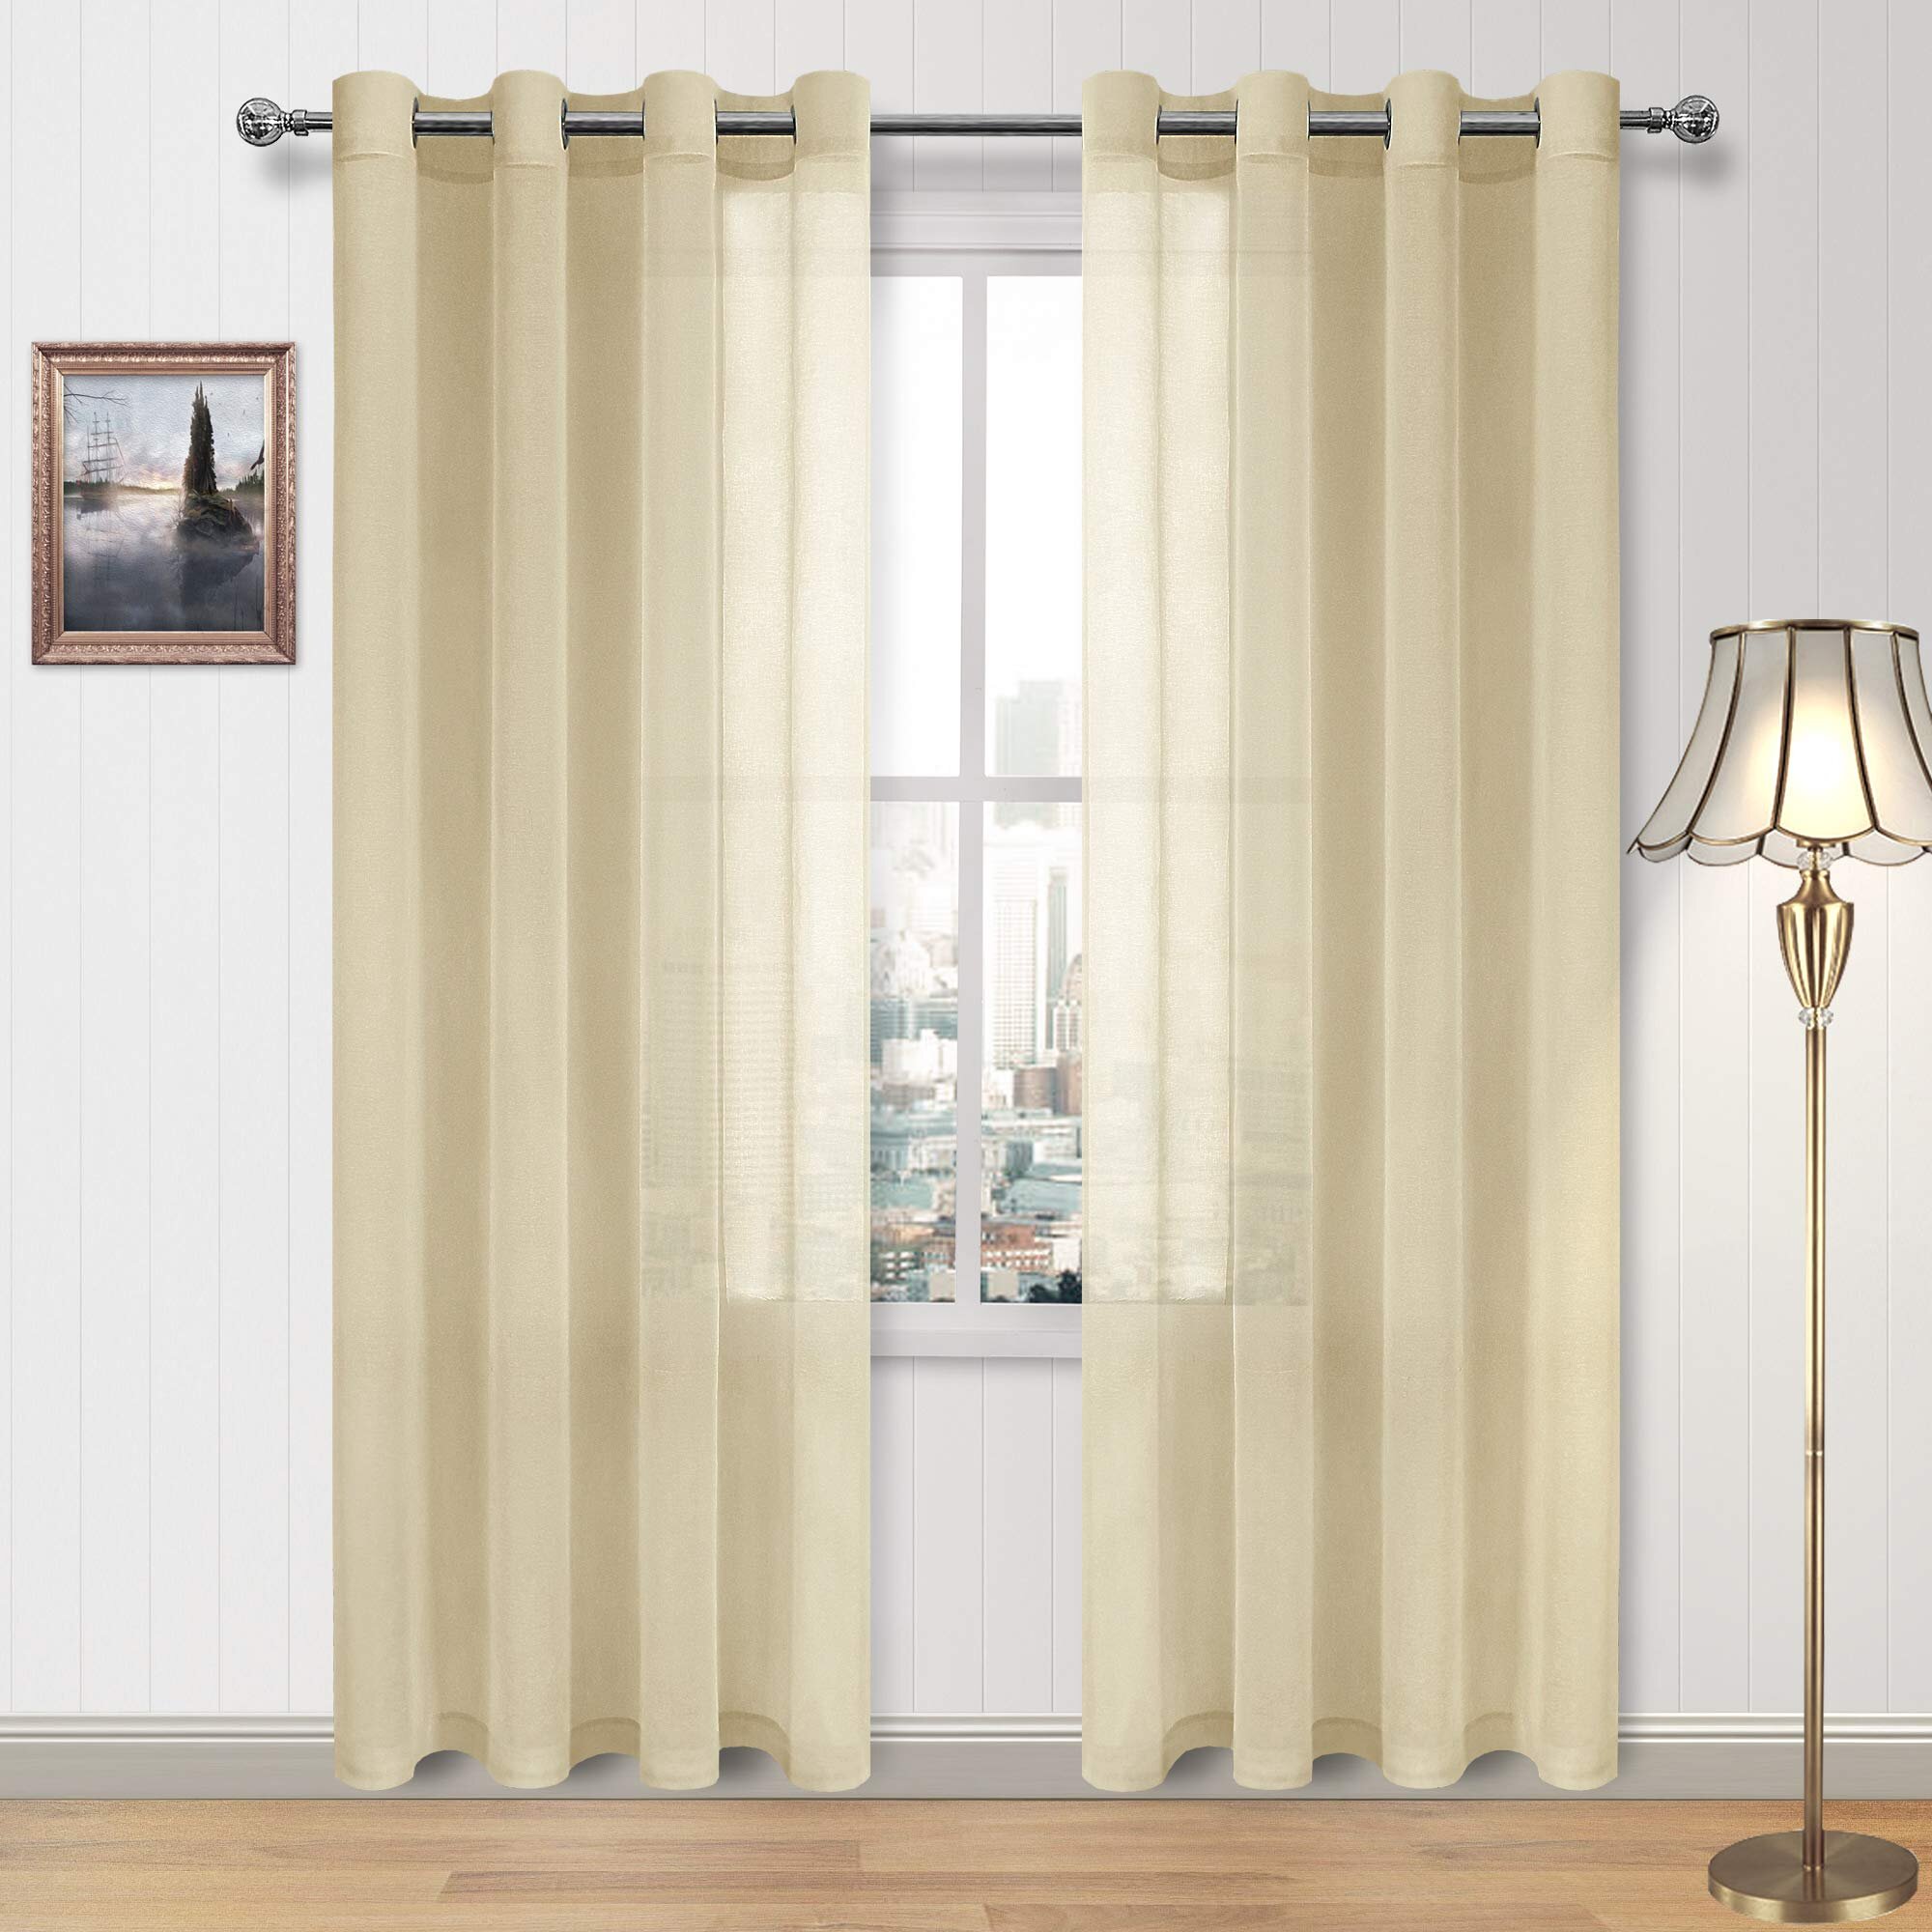 2 Panels Grommet Faux Linen Blackout Thermal Window Curtain Drapes 63" 84" 95"L 